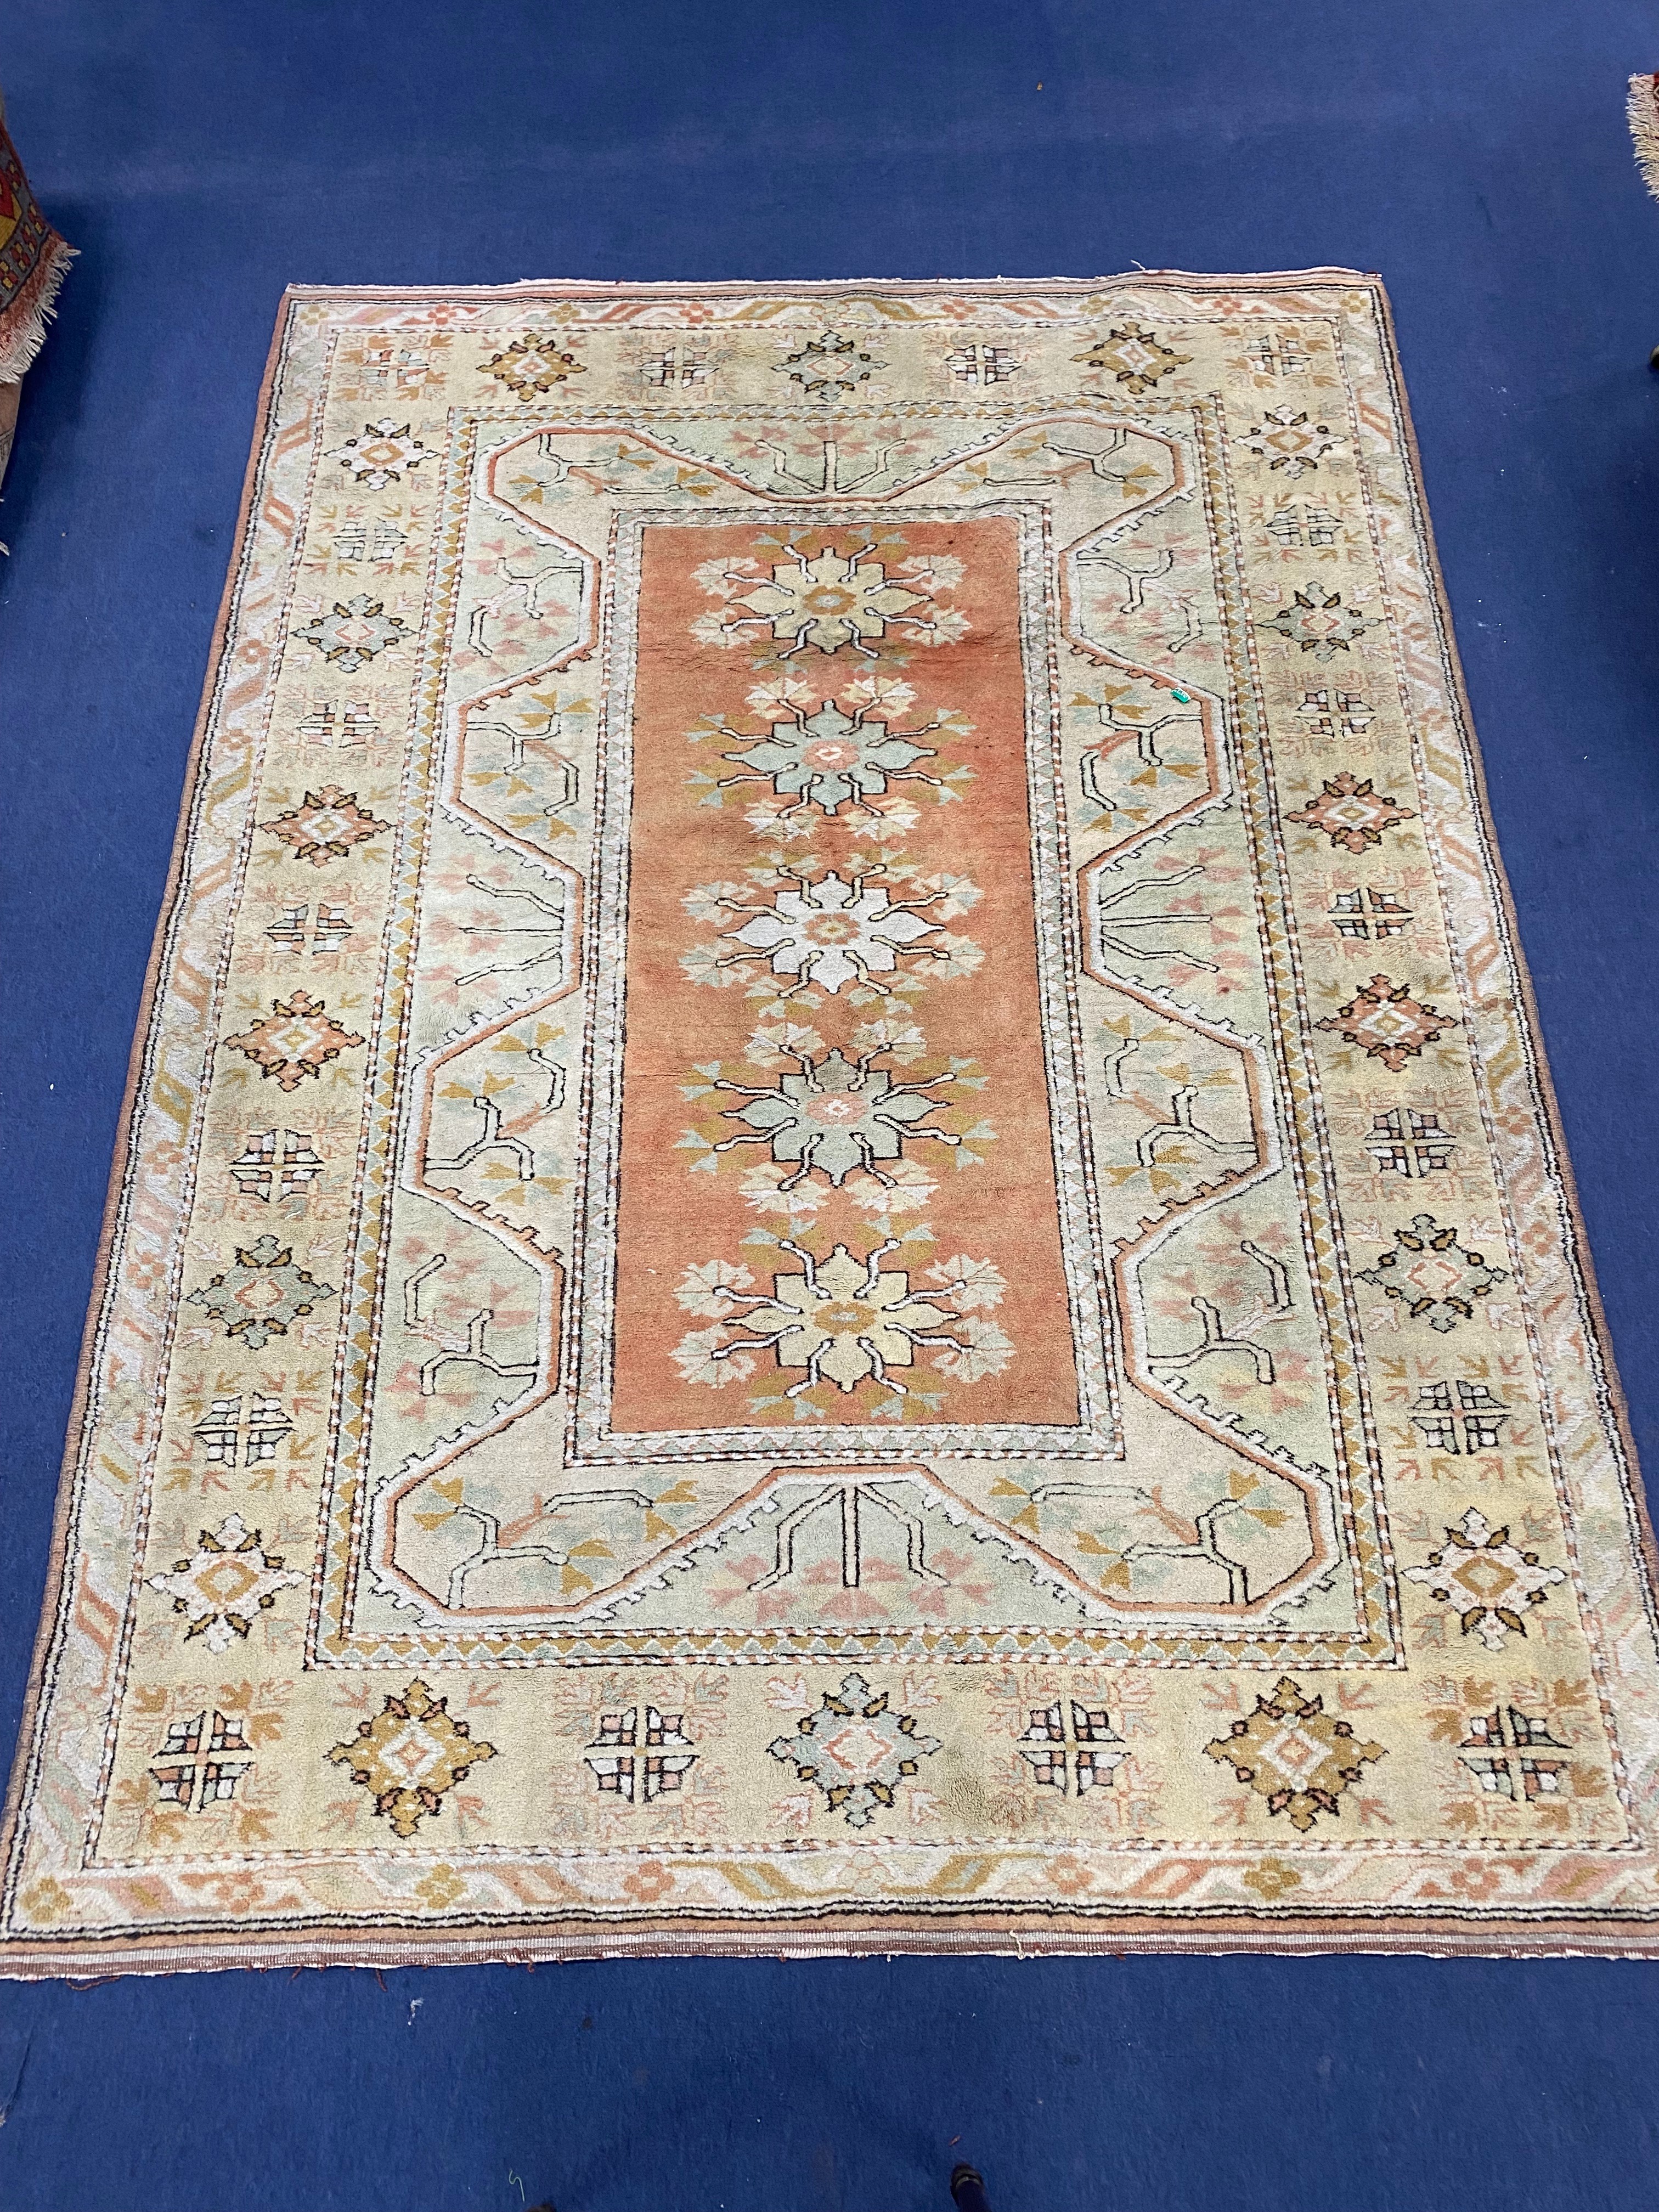 A Turkish pale green ground rug, 270 x 196cm